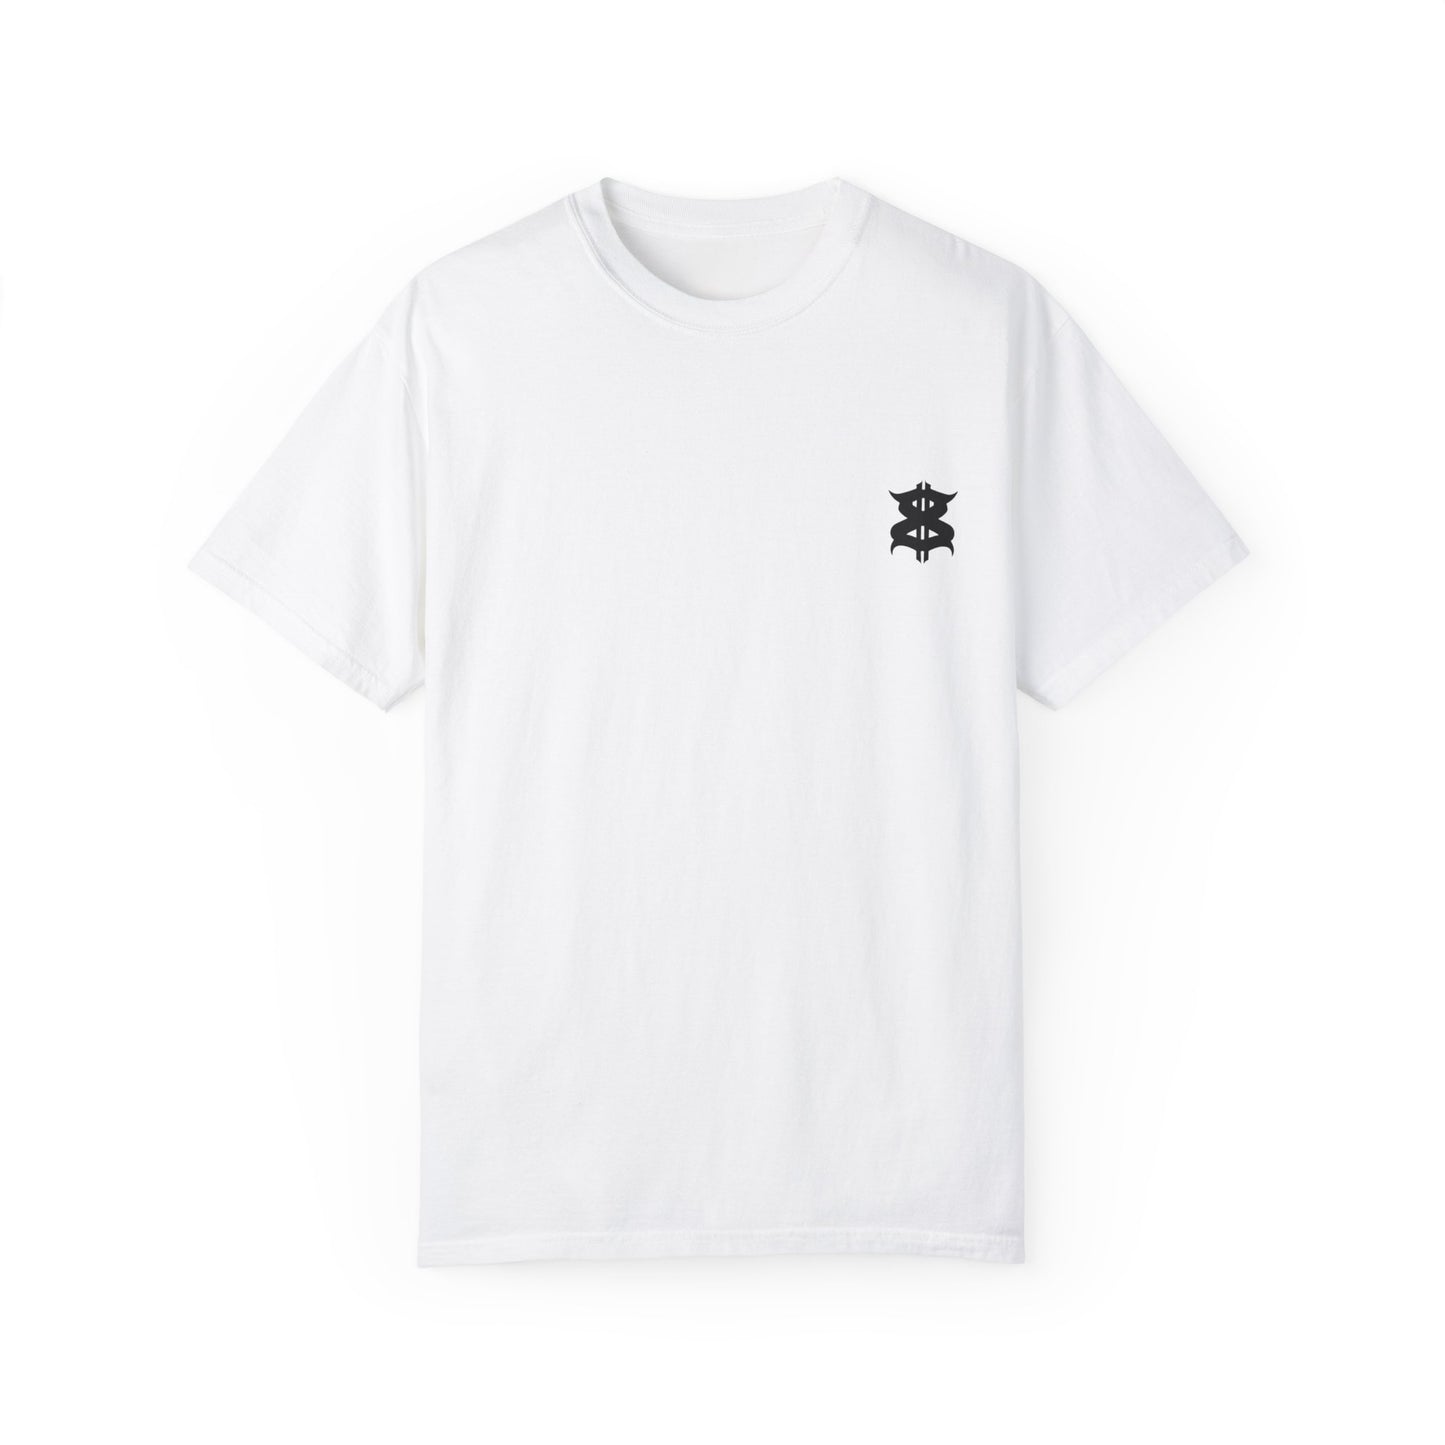 ANGEL Harderground - Unisex Garment-Dyed T-shirt - front &amp; back logo